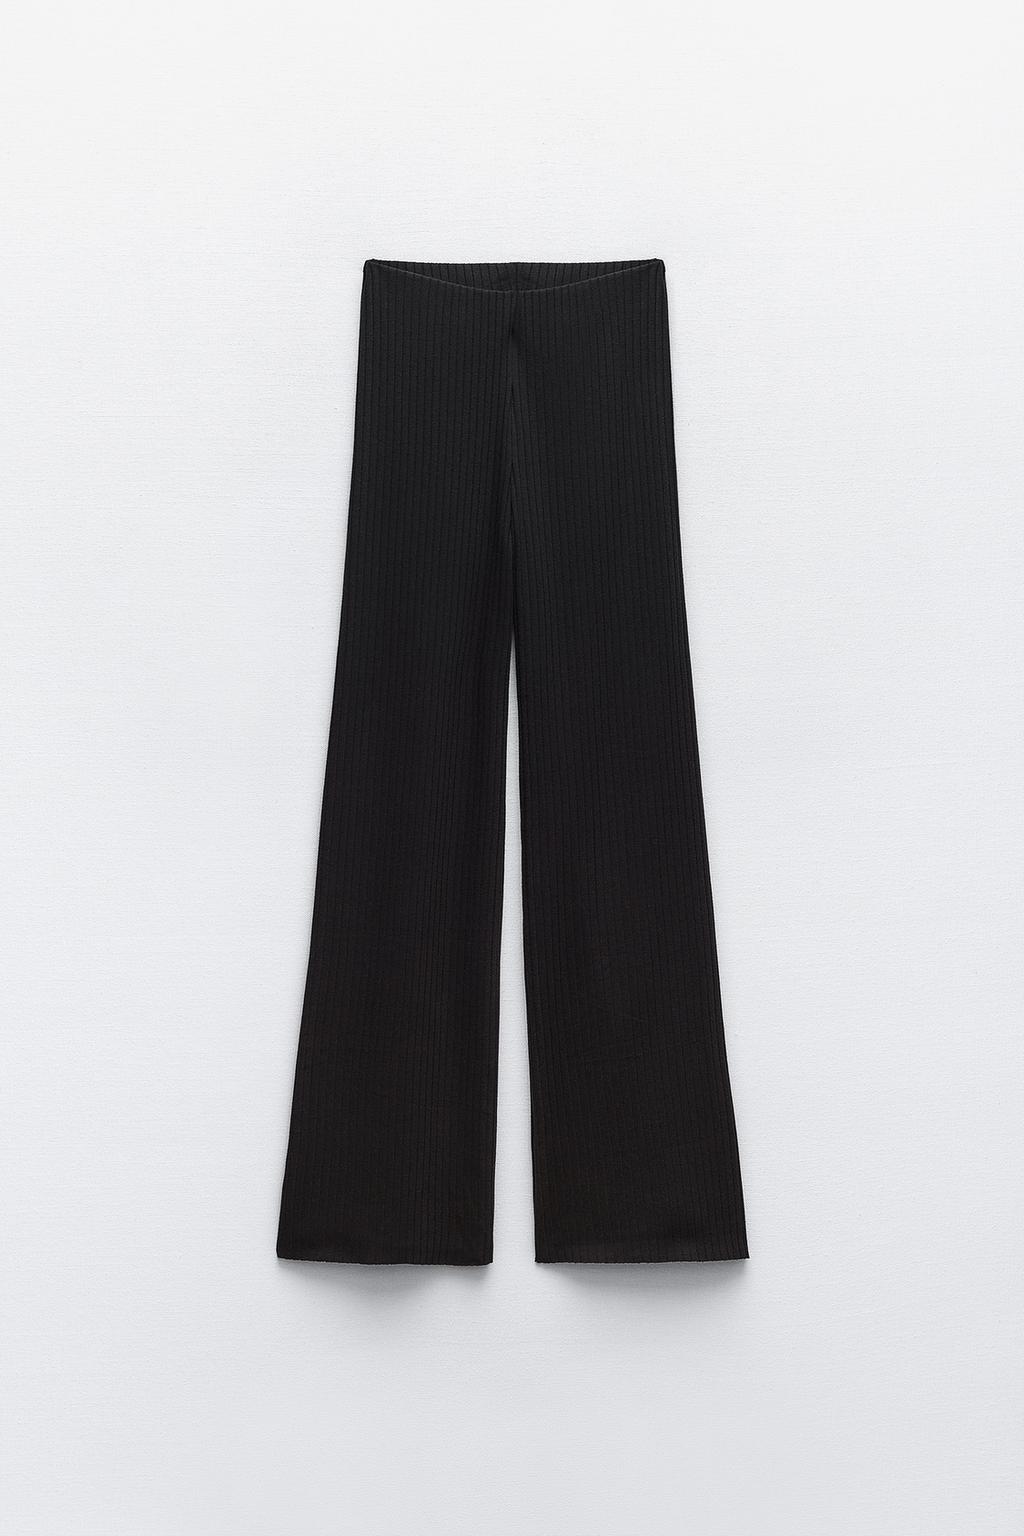 Широкие брюки в ребрику ZARA, черный брюки карандаш женские повседневные до щиколотки однотонные хлопковые штаны с эластичным поясом черные брюки с широкими штанинами в стил